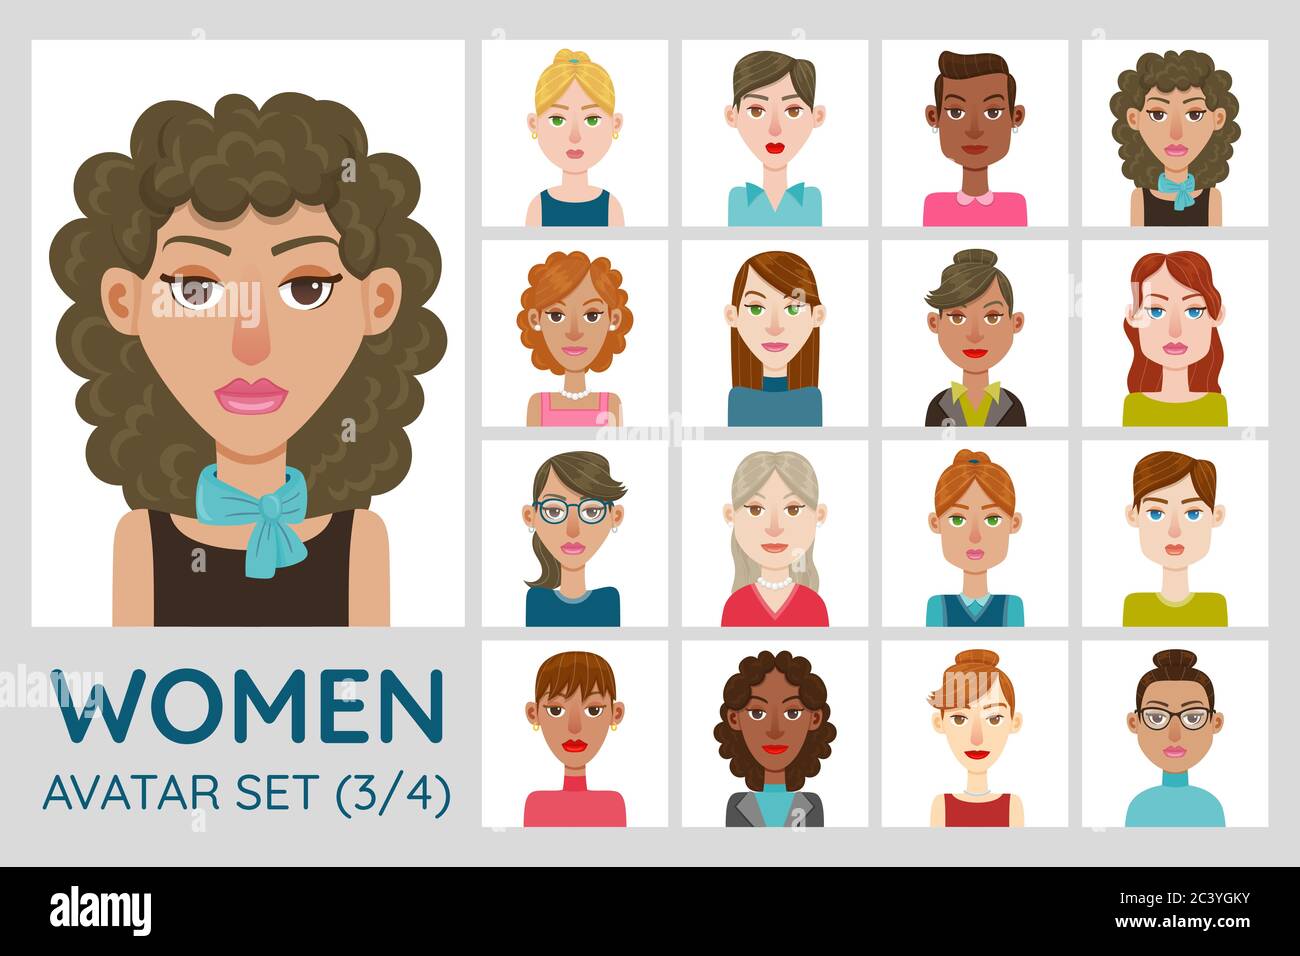 Weiblicher Avatar. Sammlung von 16 Avatare mit verschiedenen Frisuren, Gesichtsformen, Hautfarbe und Kleidung. Satz 2 von 4. Stock Vektor